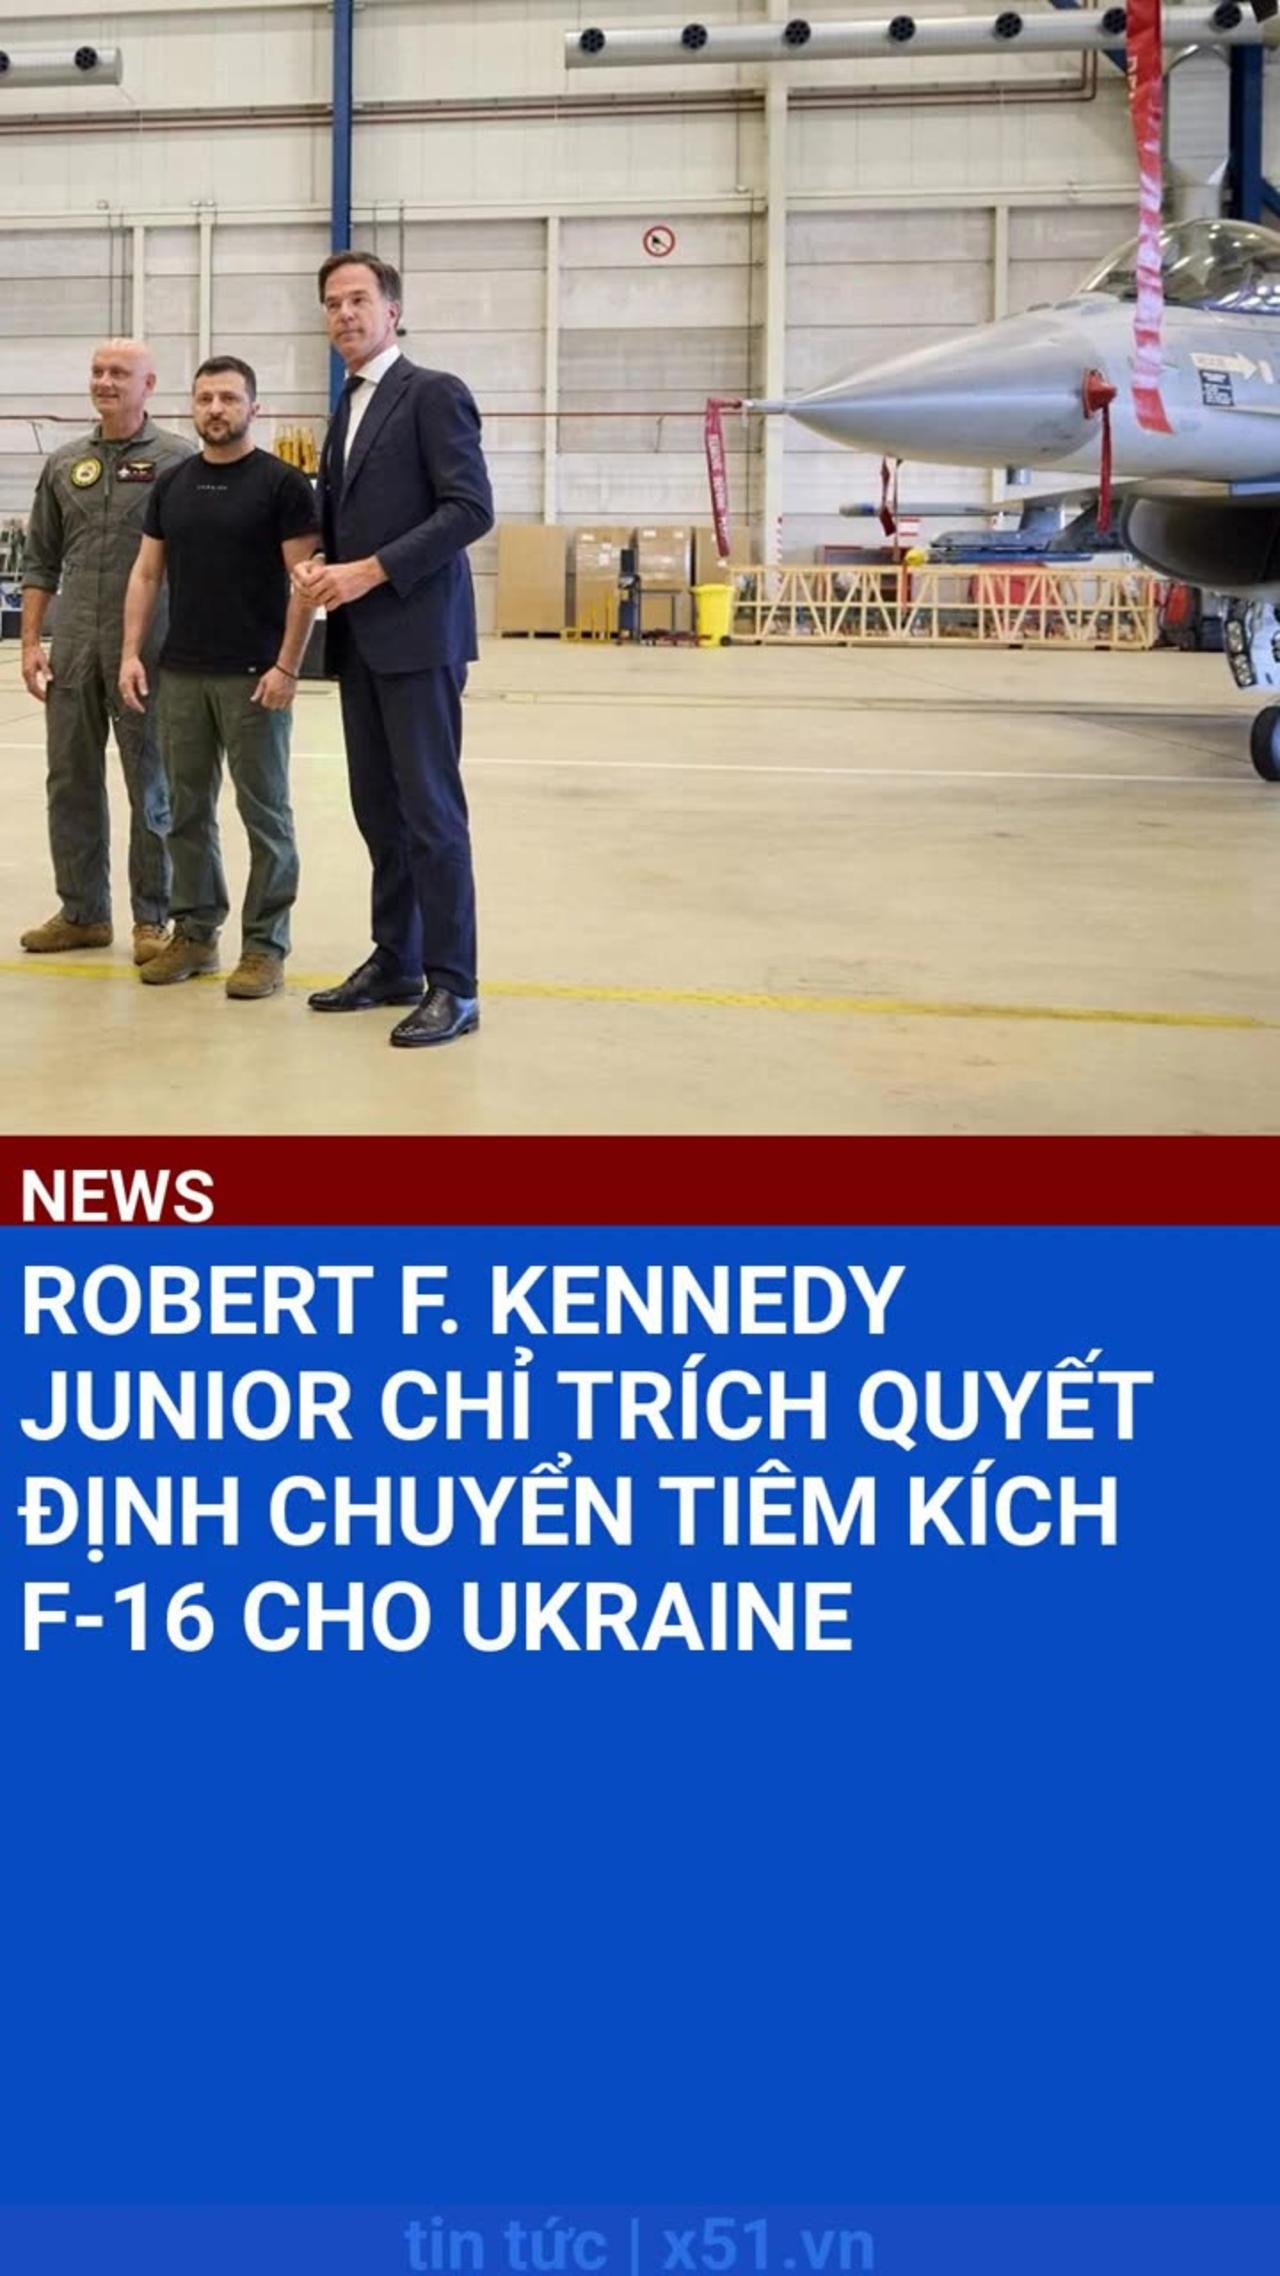 ROBERT F. KENNEDY JUNIOR CHỈ TRÍCH QUYẾT ĐỊNH CHUYỂN TIÊM KÍCH F-16 CHO UKRAINE #SHORTS